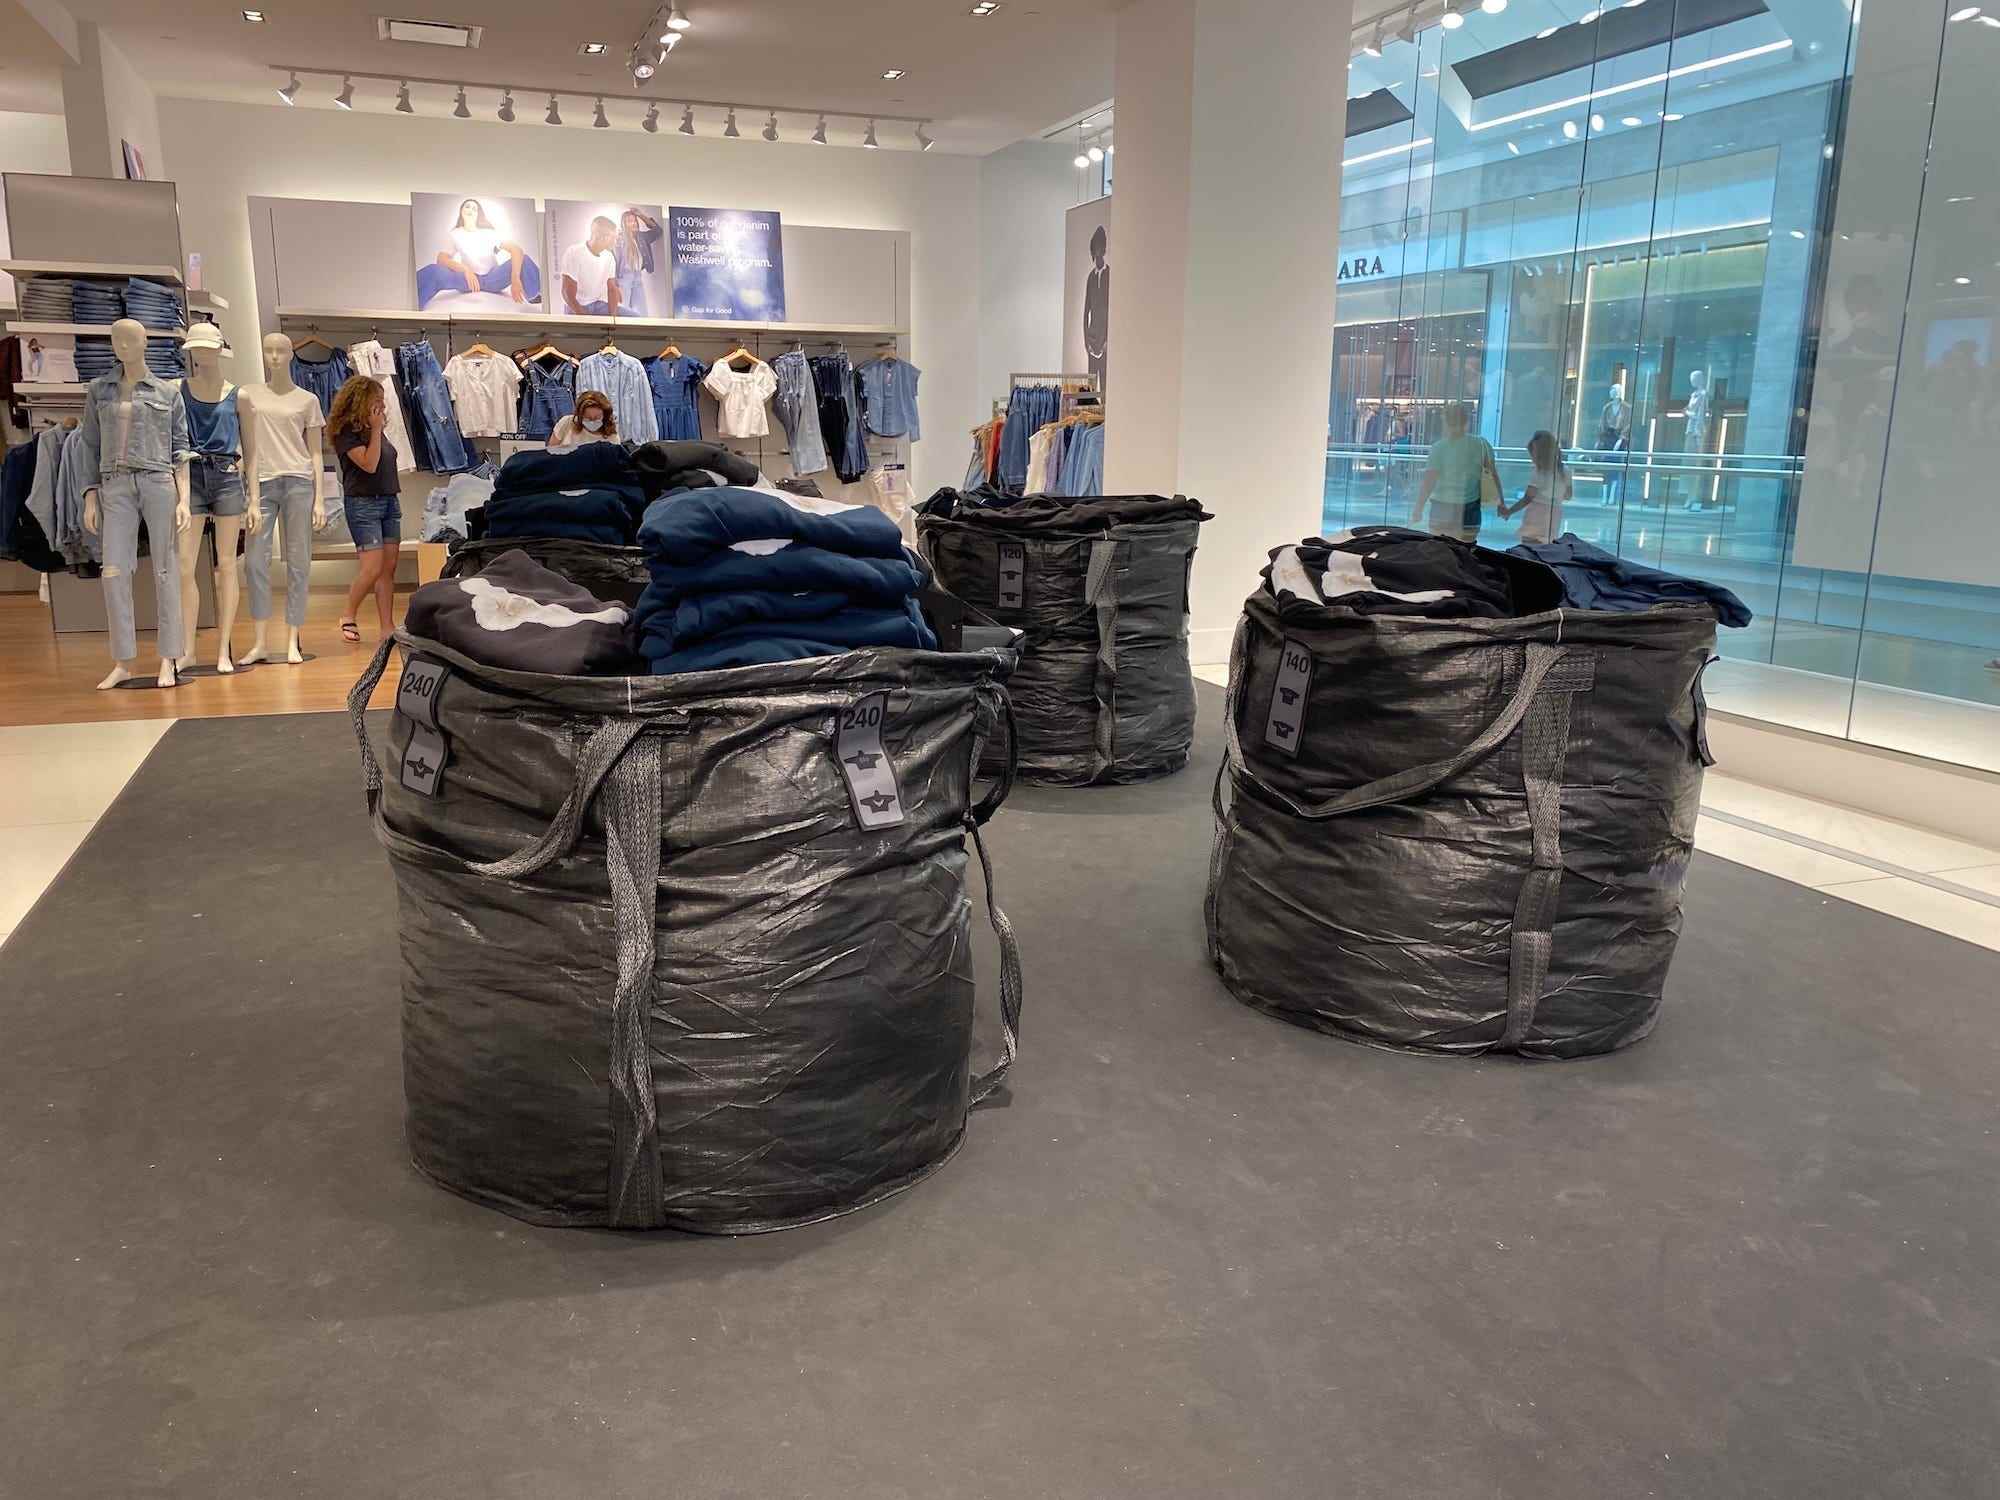 Müllsäcke voller Yeezy-Kleidung in einem Gap-Laden in New Jersey am 17. August 2022.